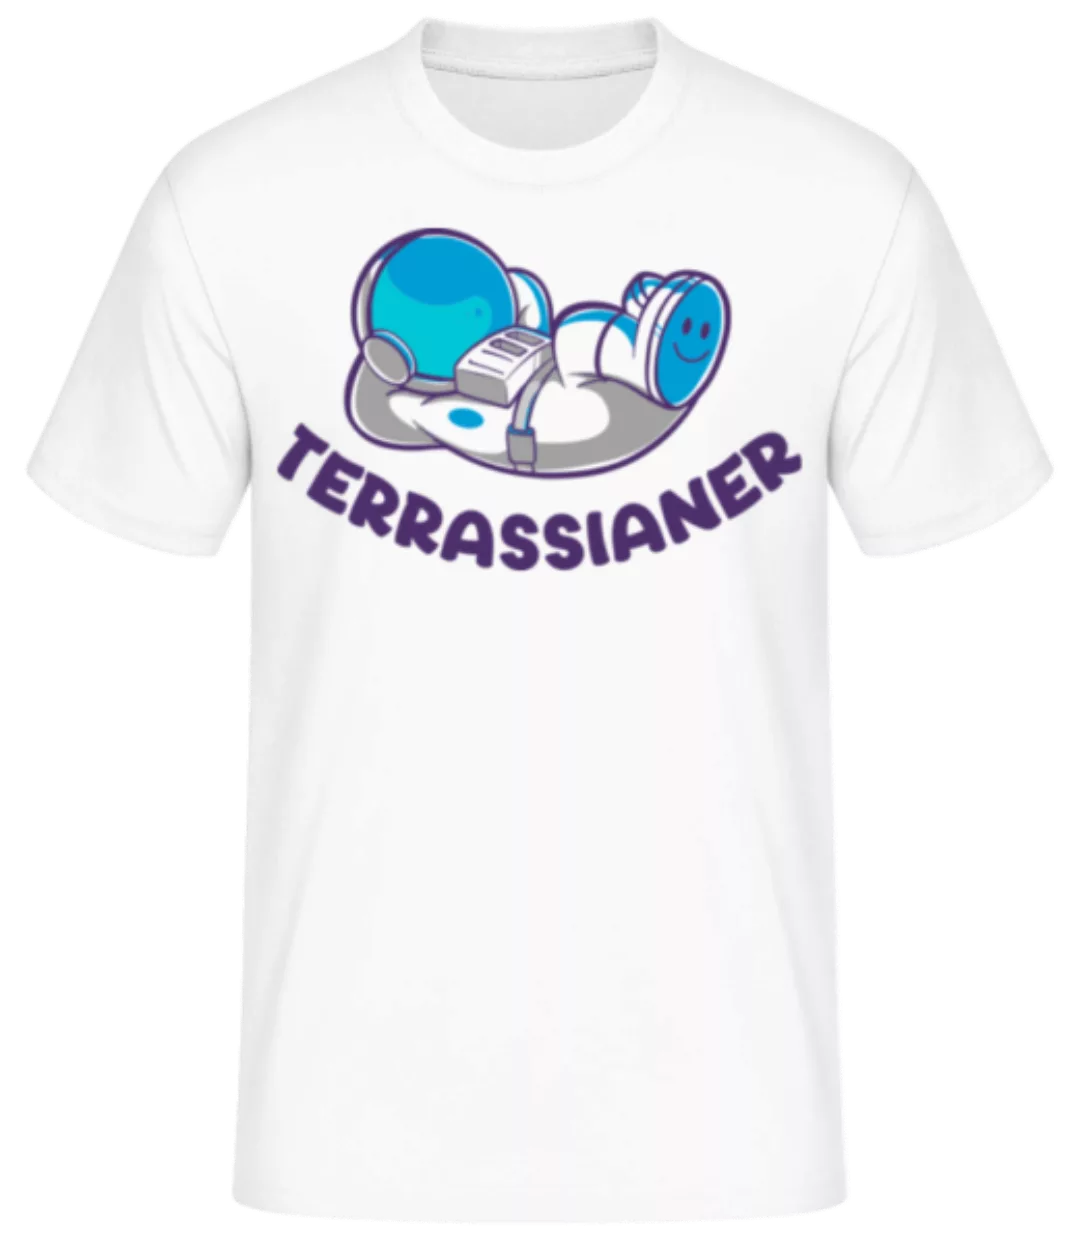 Terrassianer · Männer Basic T-Shirt günstig online kaufen